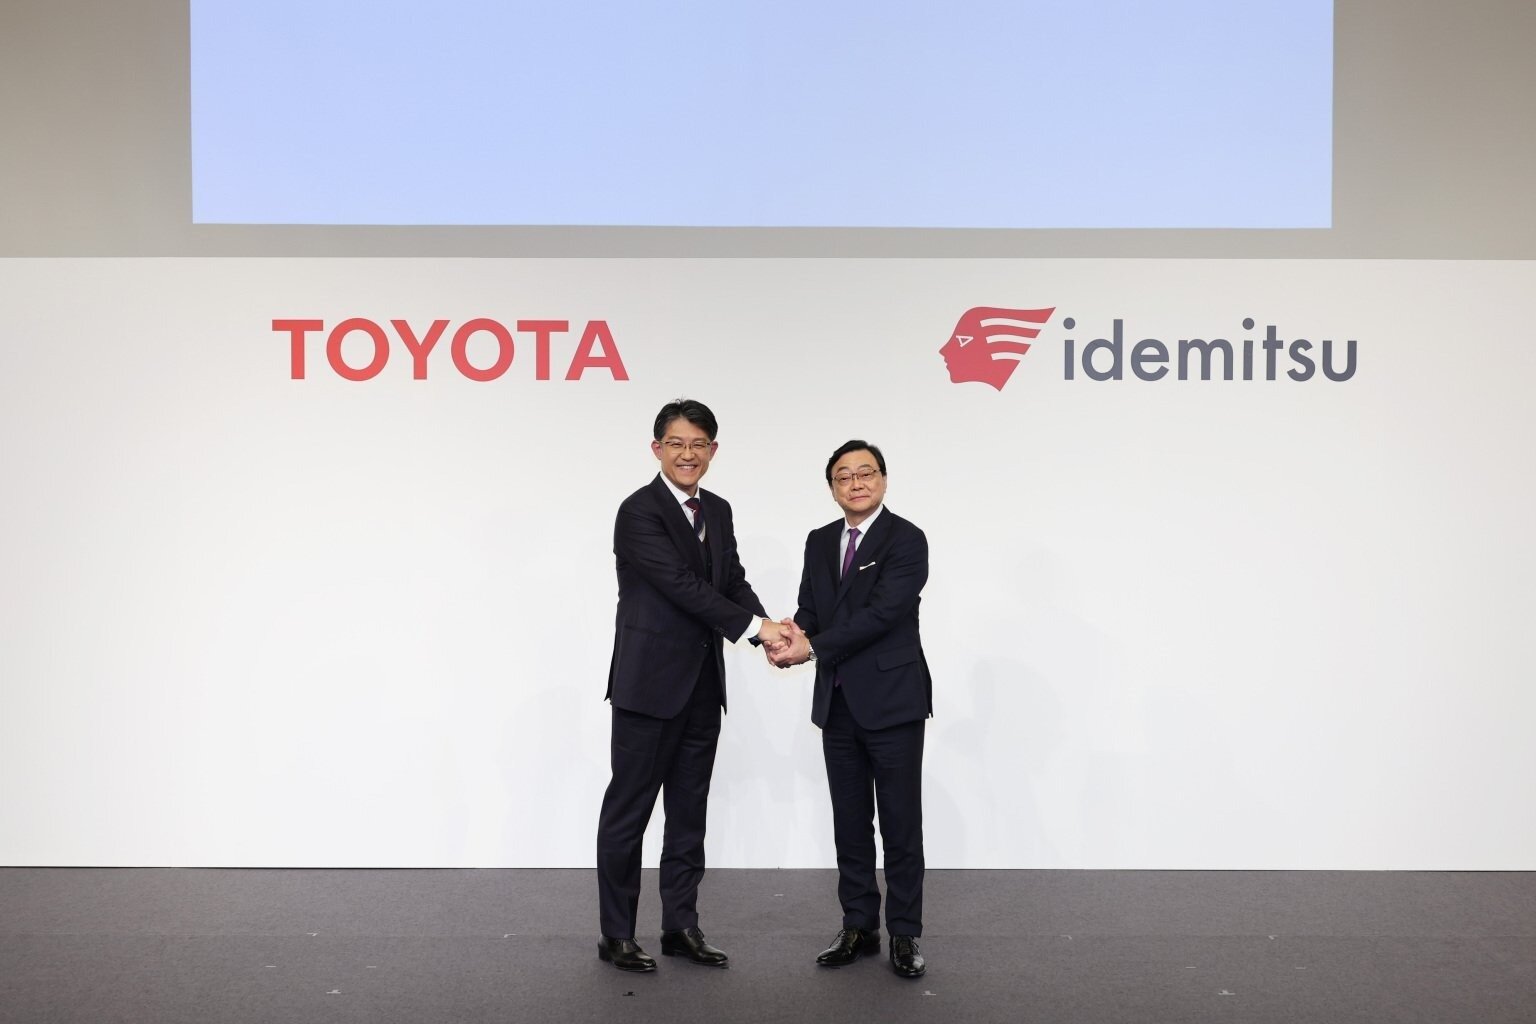 Η Toyota συνάπτει συμφωνία για τη μαζική παραγωγή μπαταριών Solid State EV με εμβέλεια 1500 χιλιομέτρων